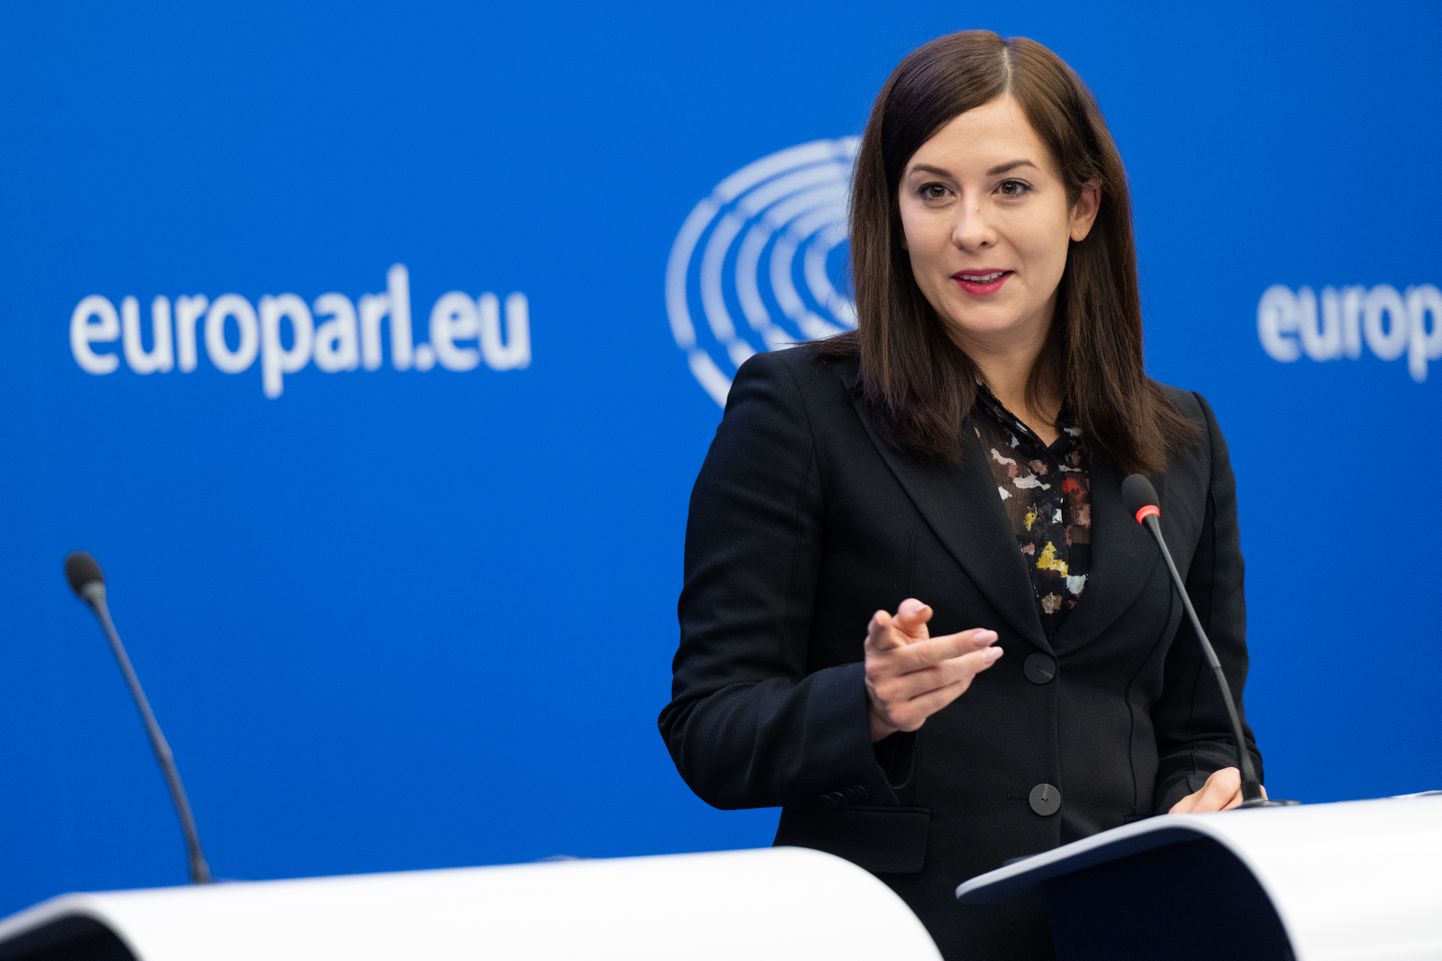 Венгерский евродепутат от оппозиционной партии «Движение Моментум» Каталин Чех на пресс-конференции в Страсбурге.